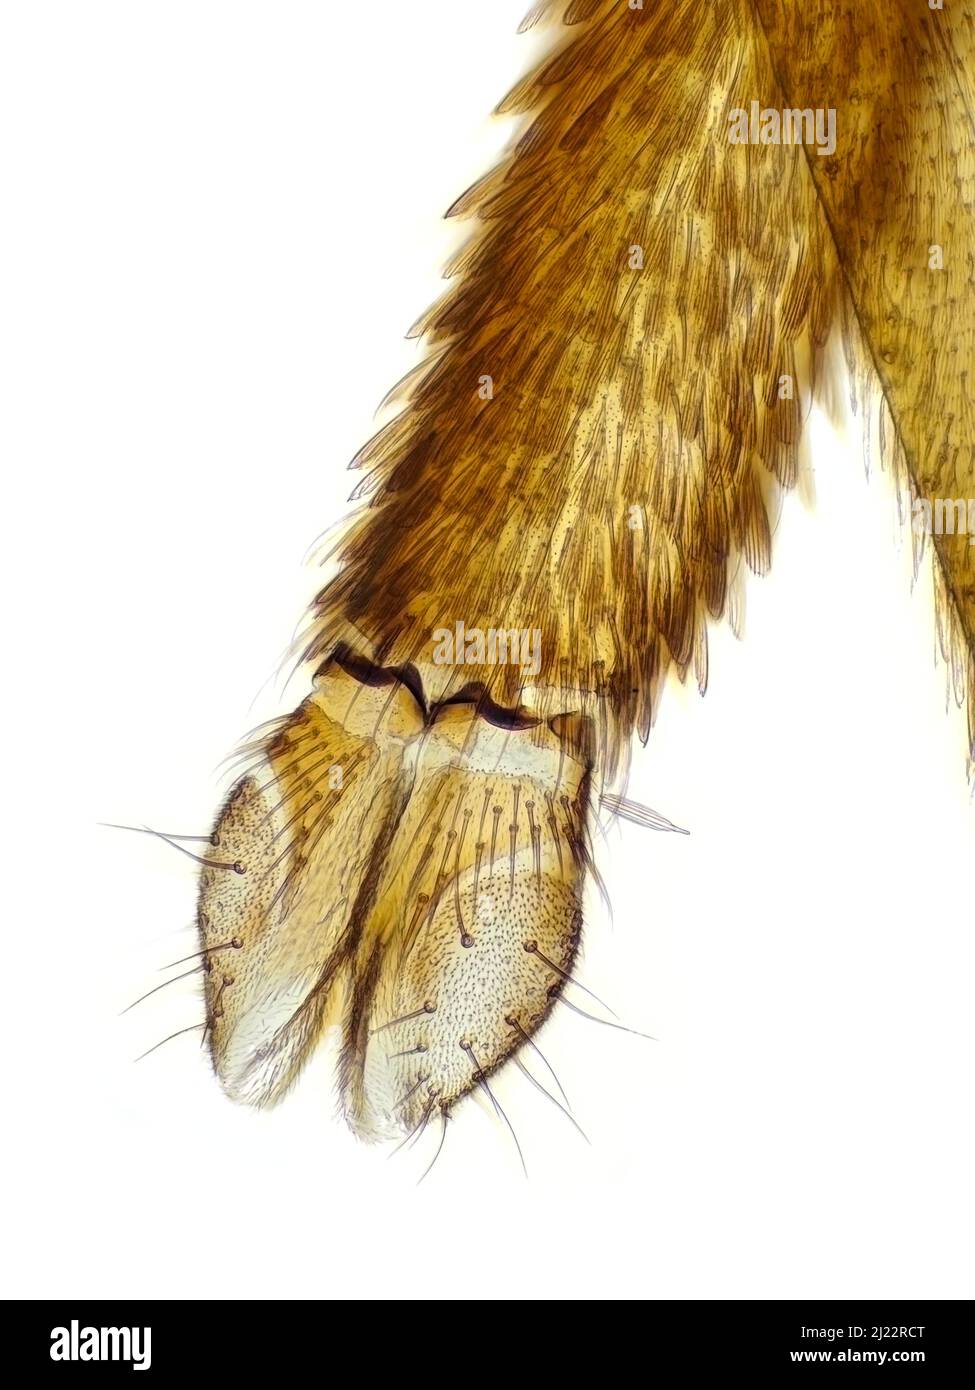 Stechmücke (Labium mit labella) unter dem Mikroskop Stockfoto